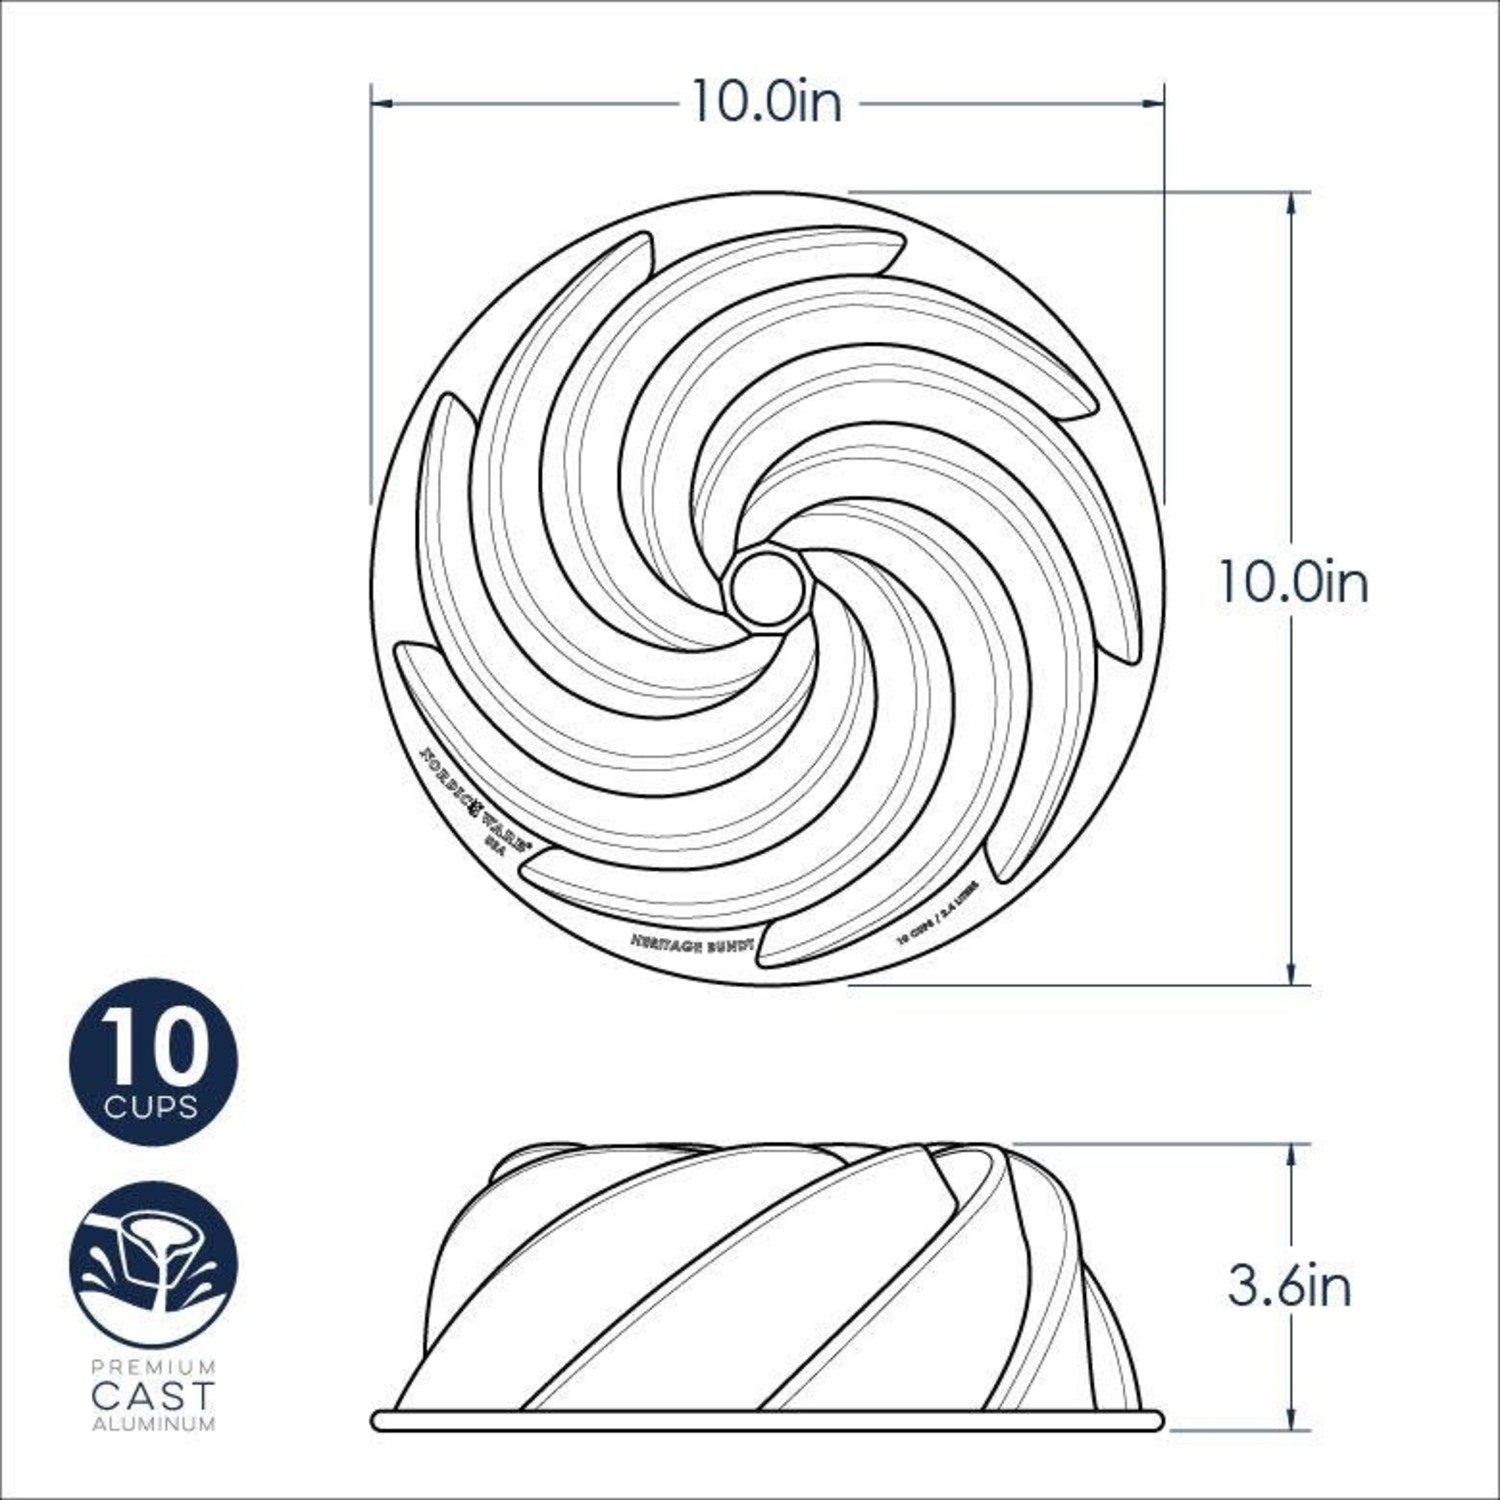 Nordic Ware Nonstick Cast Aluminum Swirl Bundt Pan, 10-Cup